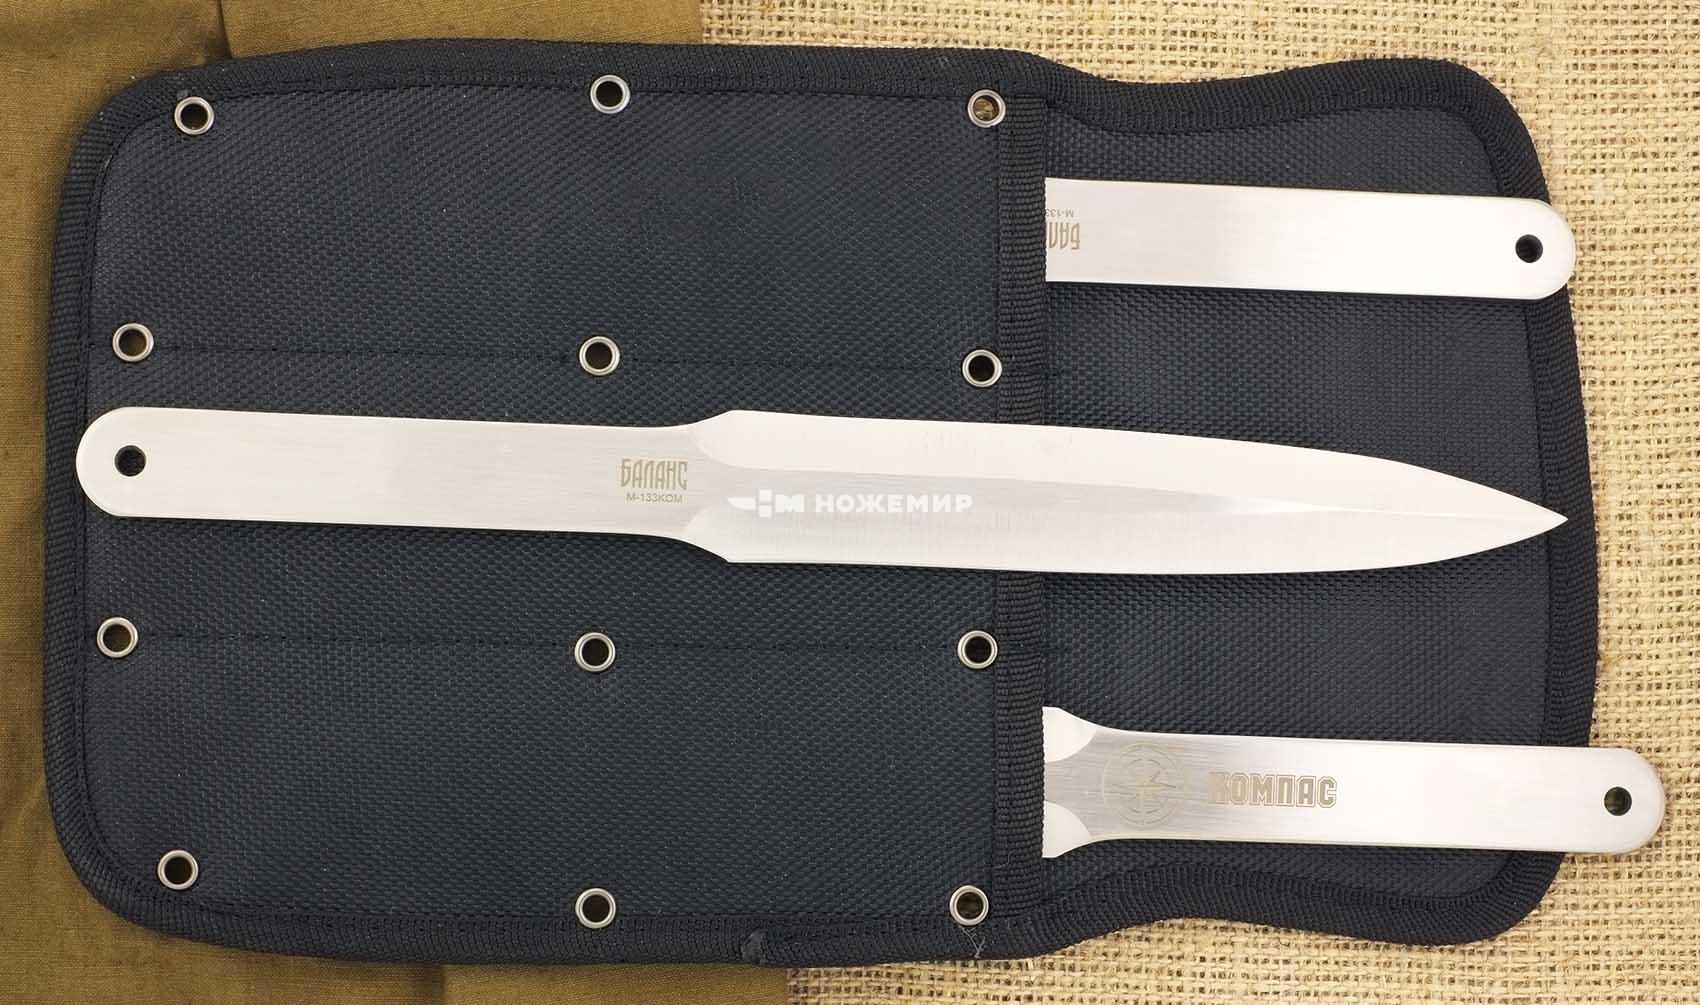 Набор ножей метательных 3 шт Ножемир Баланс Компас M-133KOM в кордуровом чехле